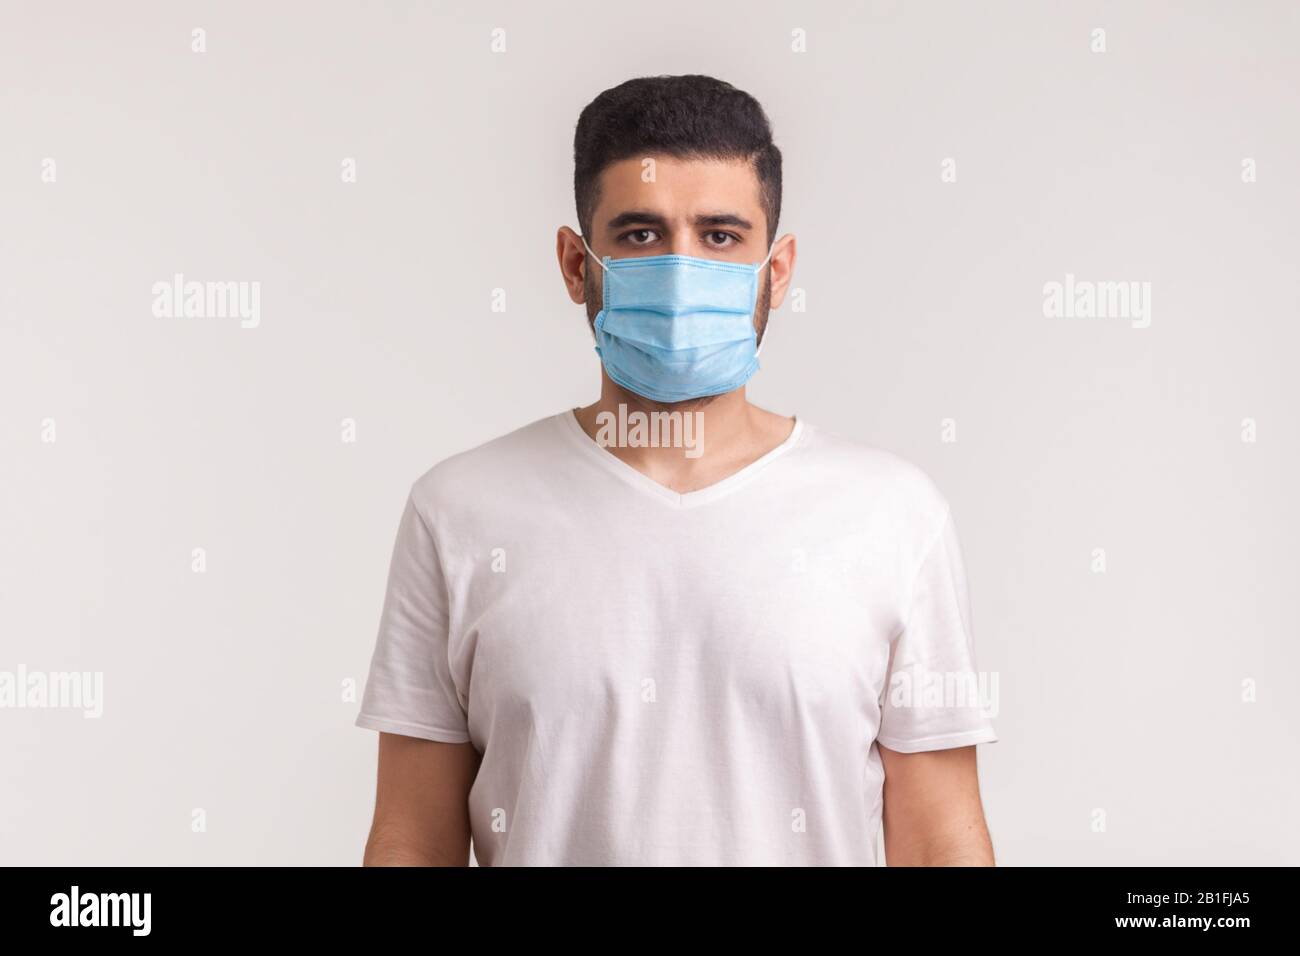 Protezione contro le malattie contagiose, il coronavirus. Uomo che indossa una maschera igienica per prevenire infezioni, malattie respiratorie aeree come l'influenza, 2019-NCO Foto Stock